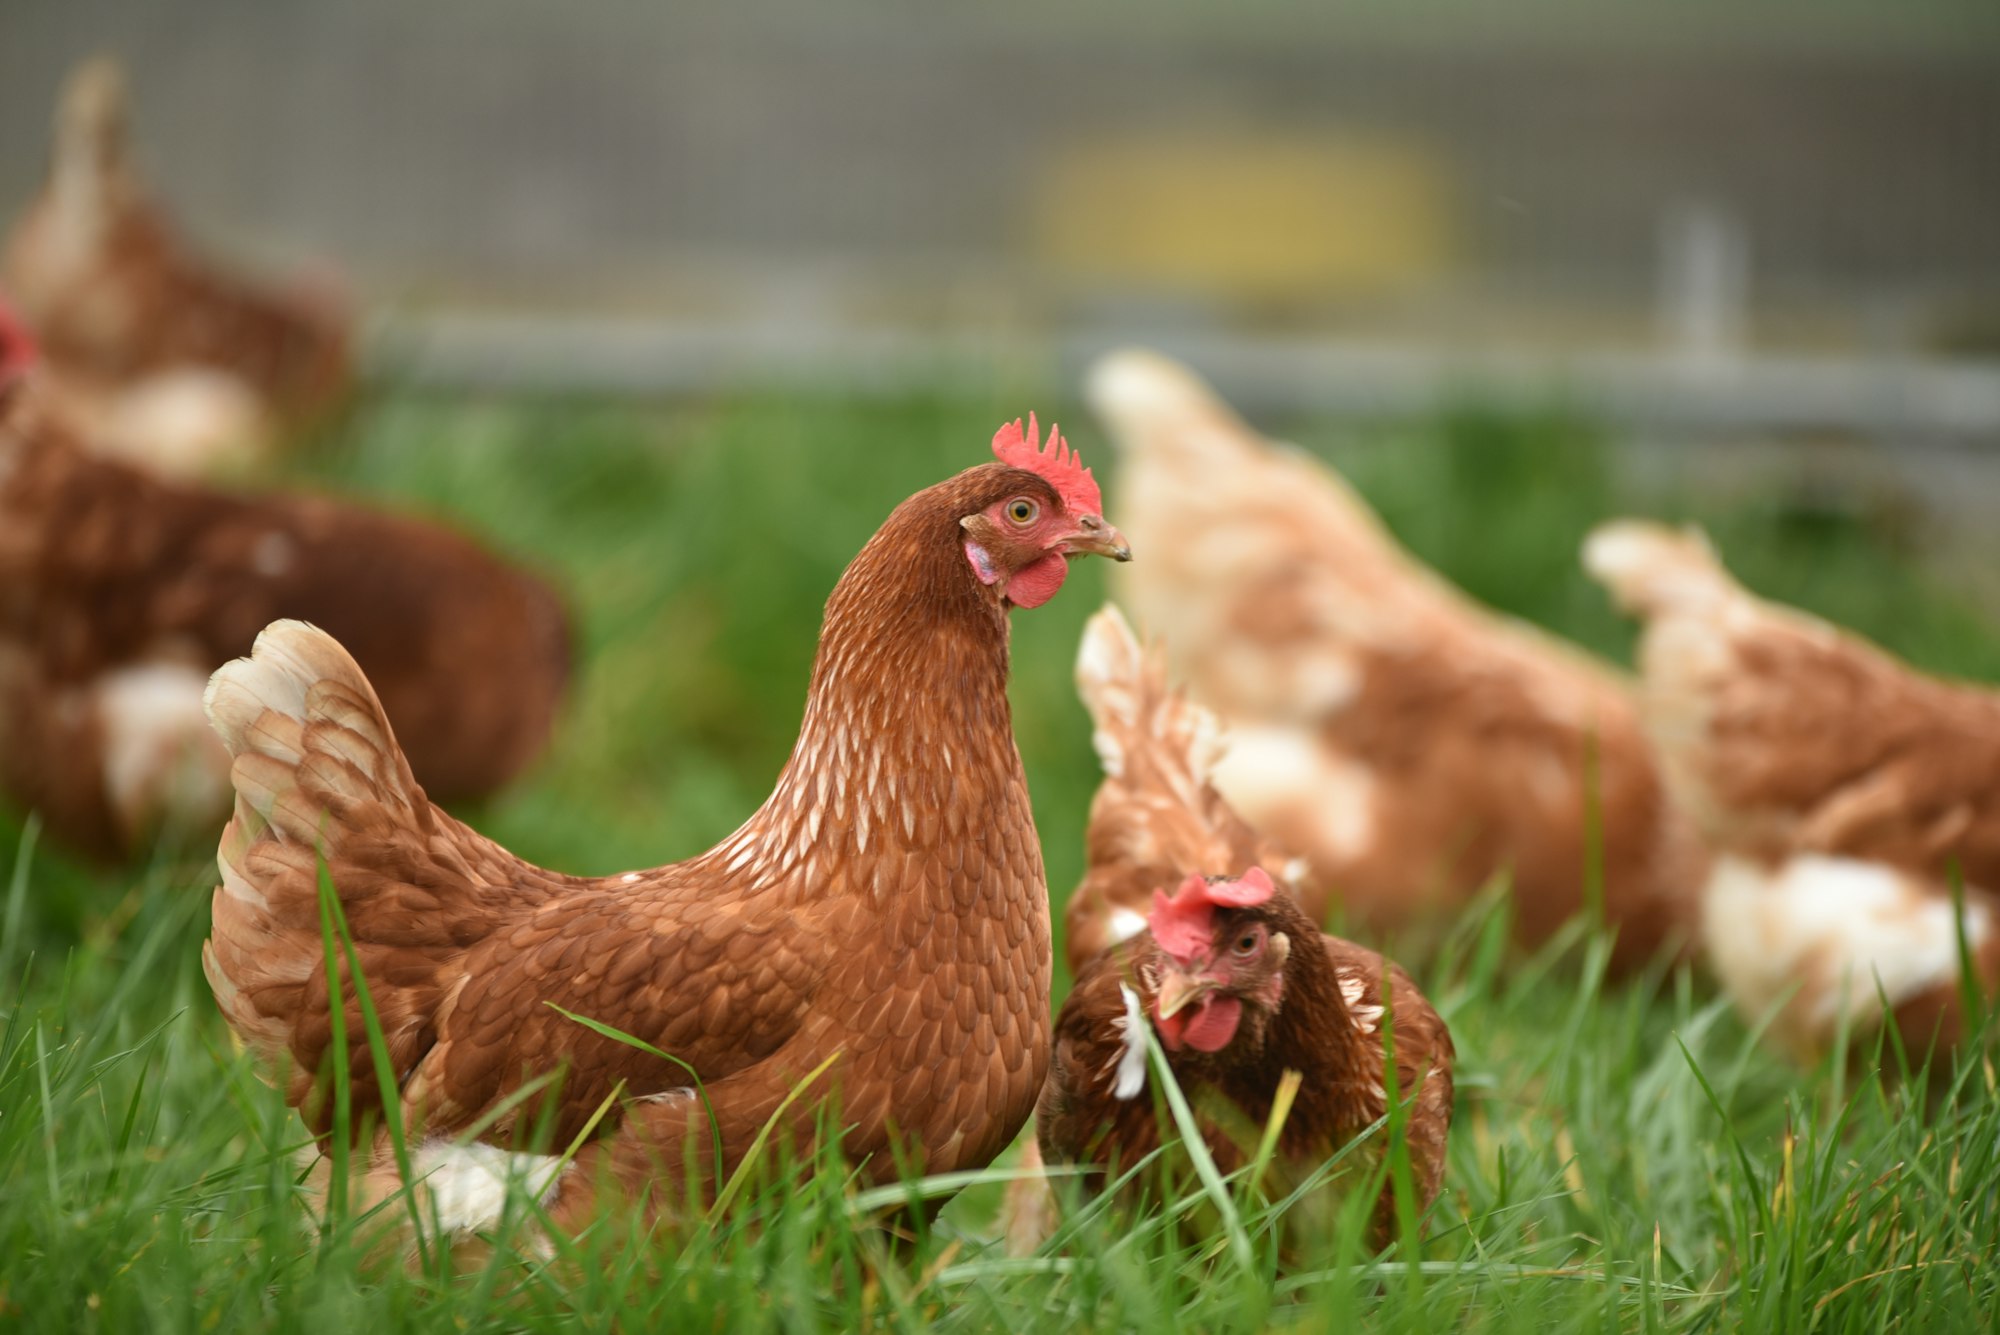 Se crean gallinas transgénicas para que maten a sus propios pollitos